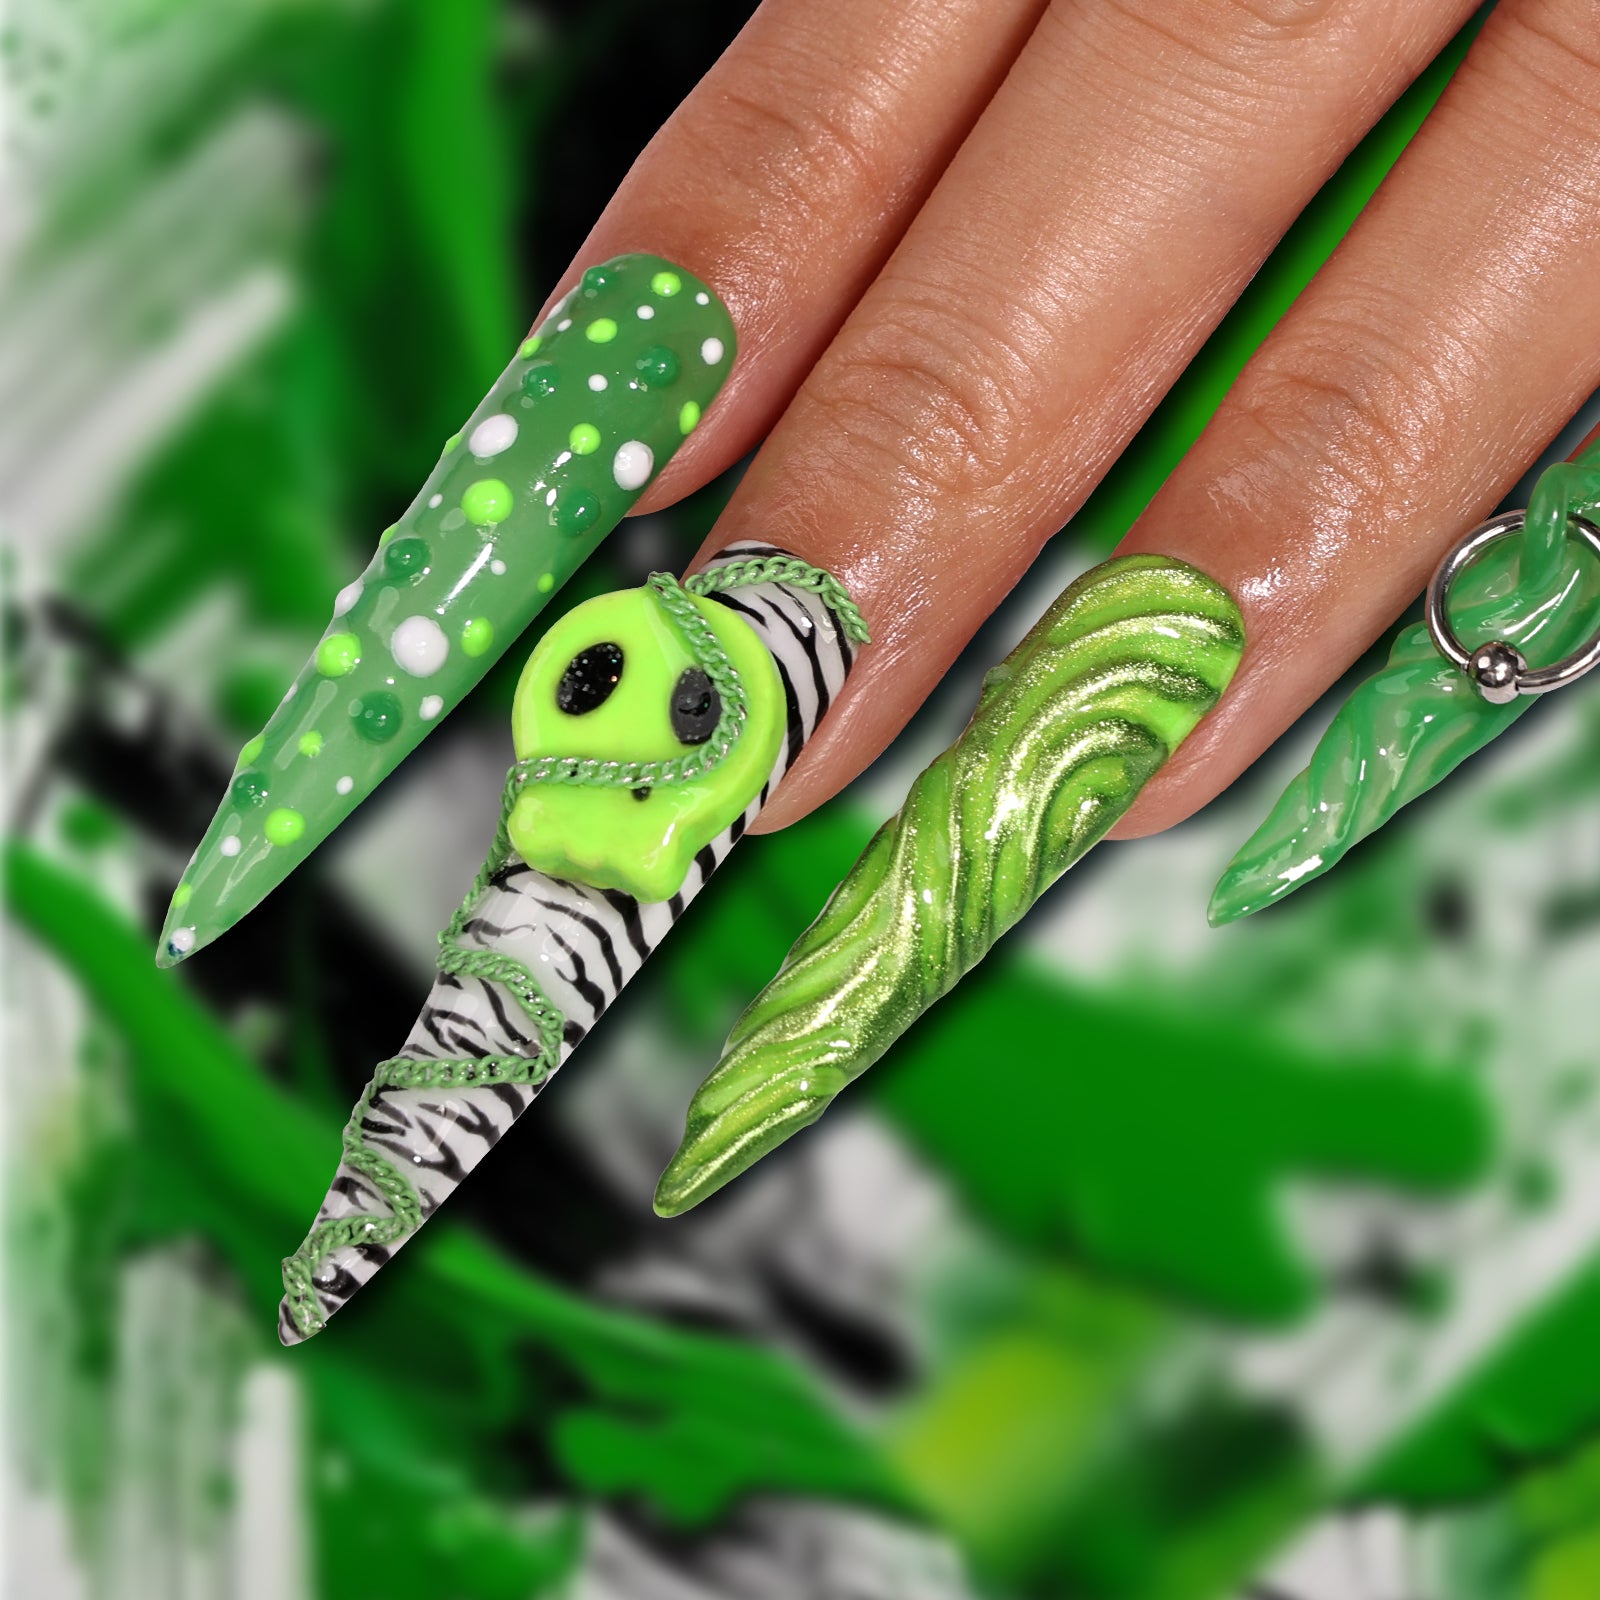 Green Halloween Stiletto Longest Press On Nails | MelodySusie